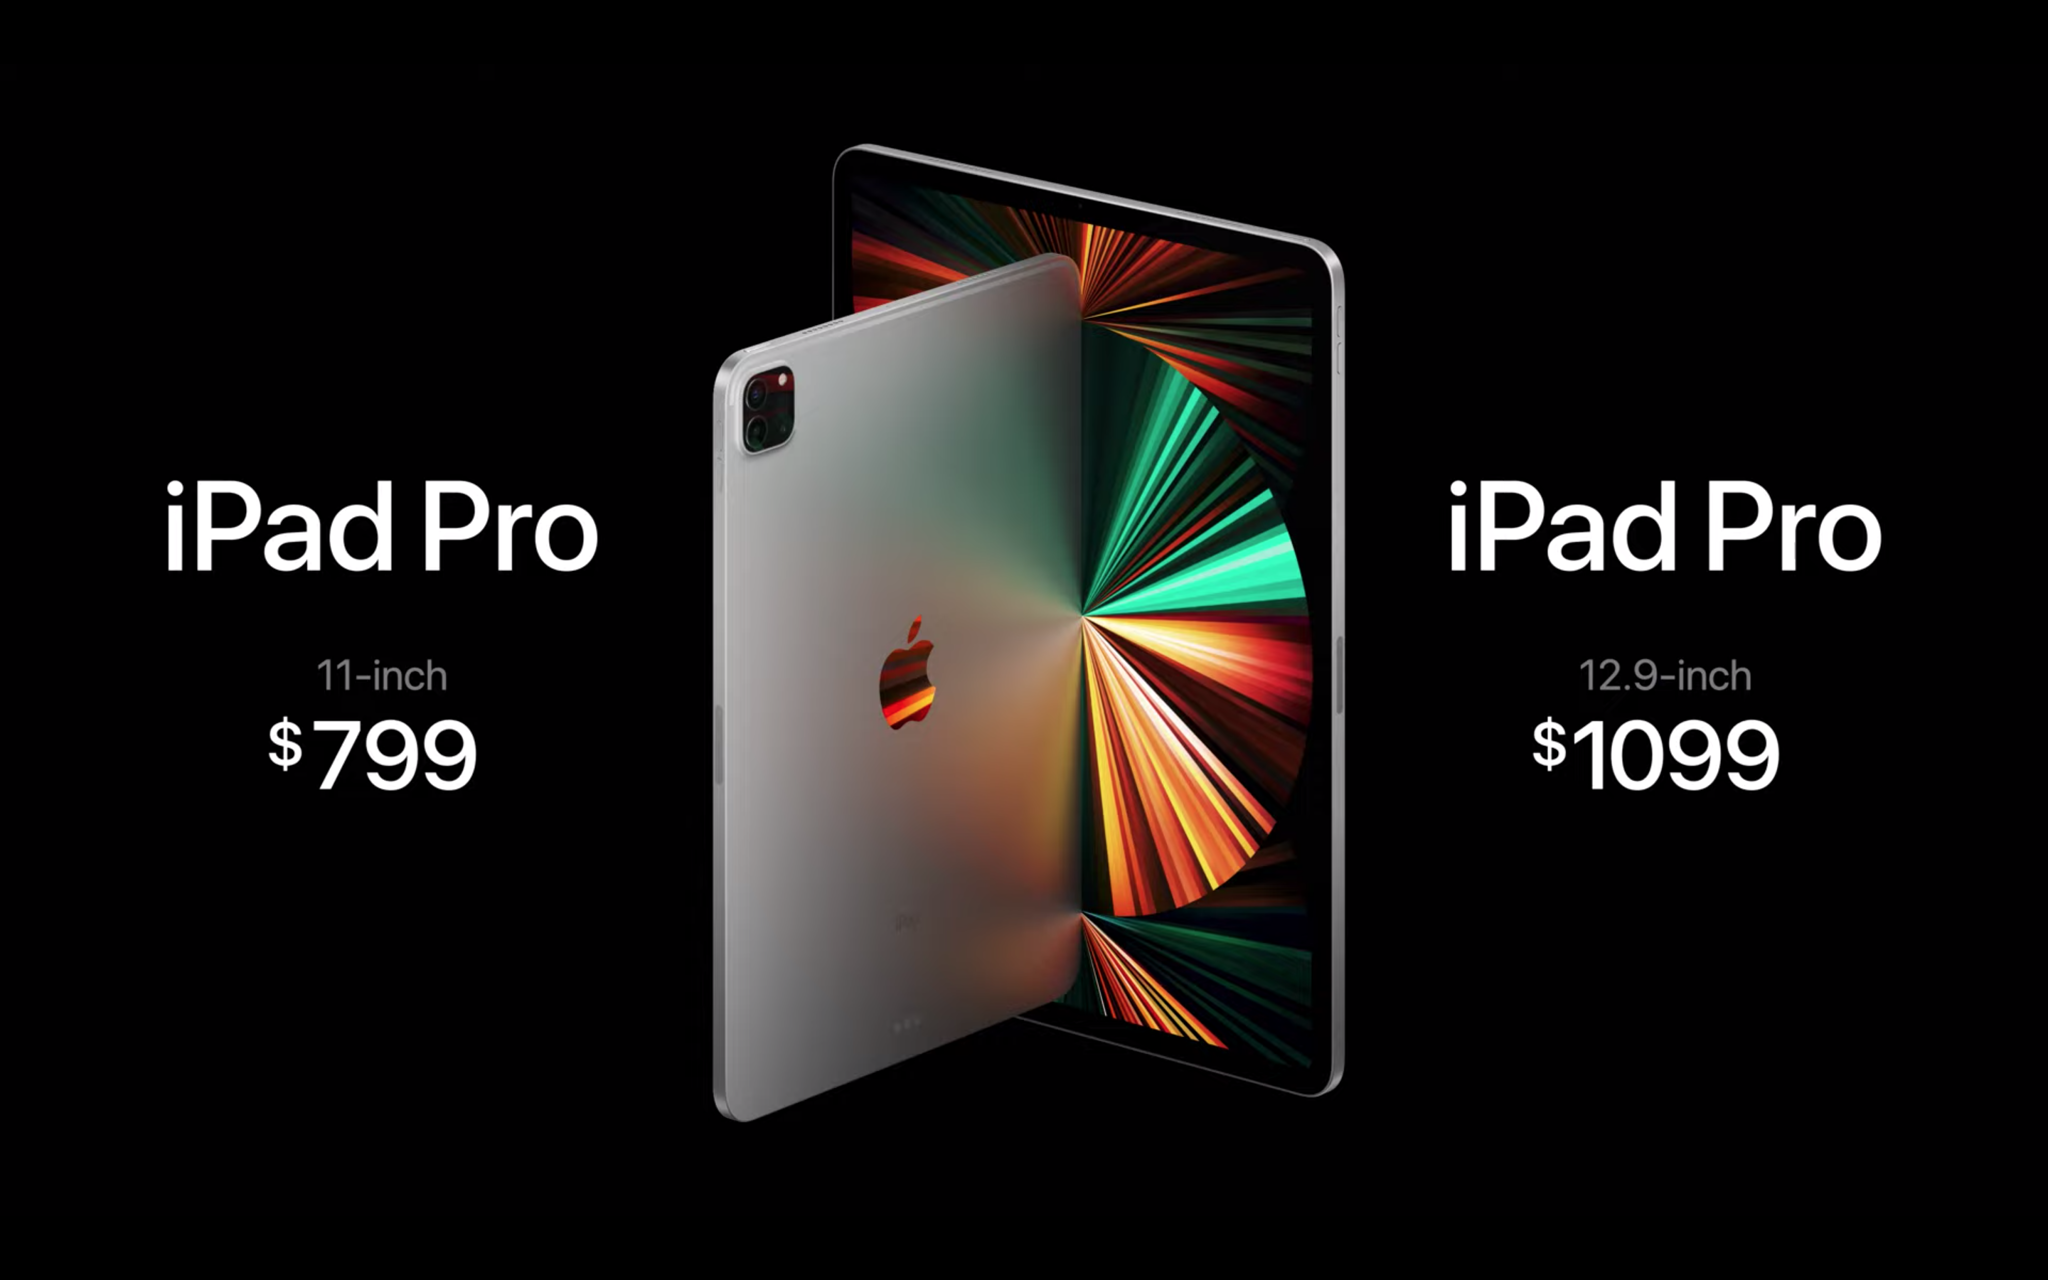 Đánh giá chi tiết iPad Pro 2021: Chiếc máy tính bảng tiệm cận nhất với được laptop, kỷ nguyên tablet thay thế laptop chính thức bắt đầu